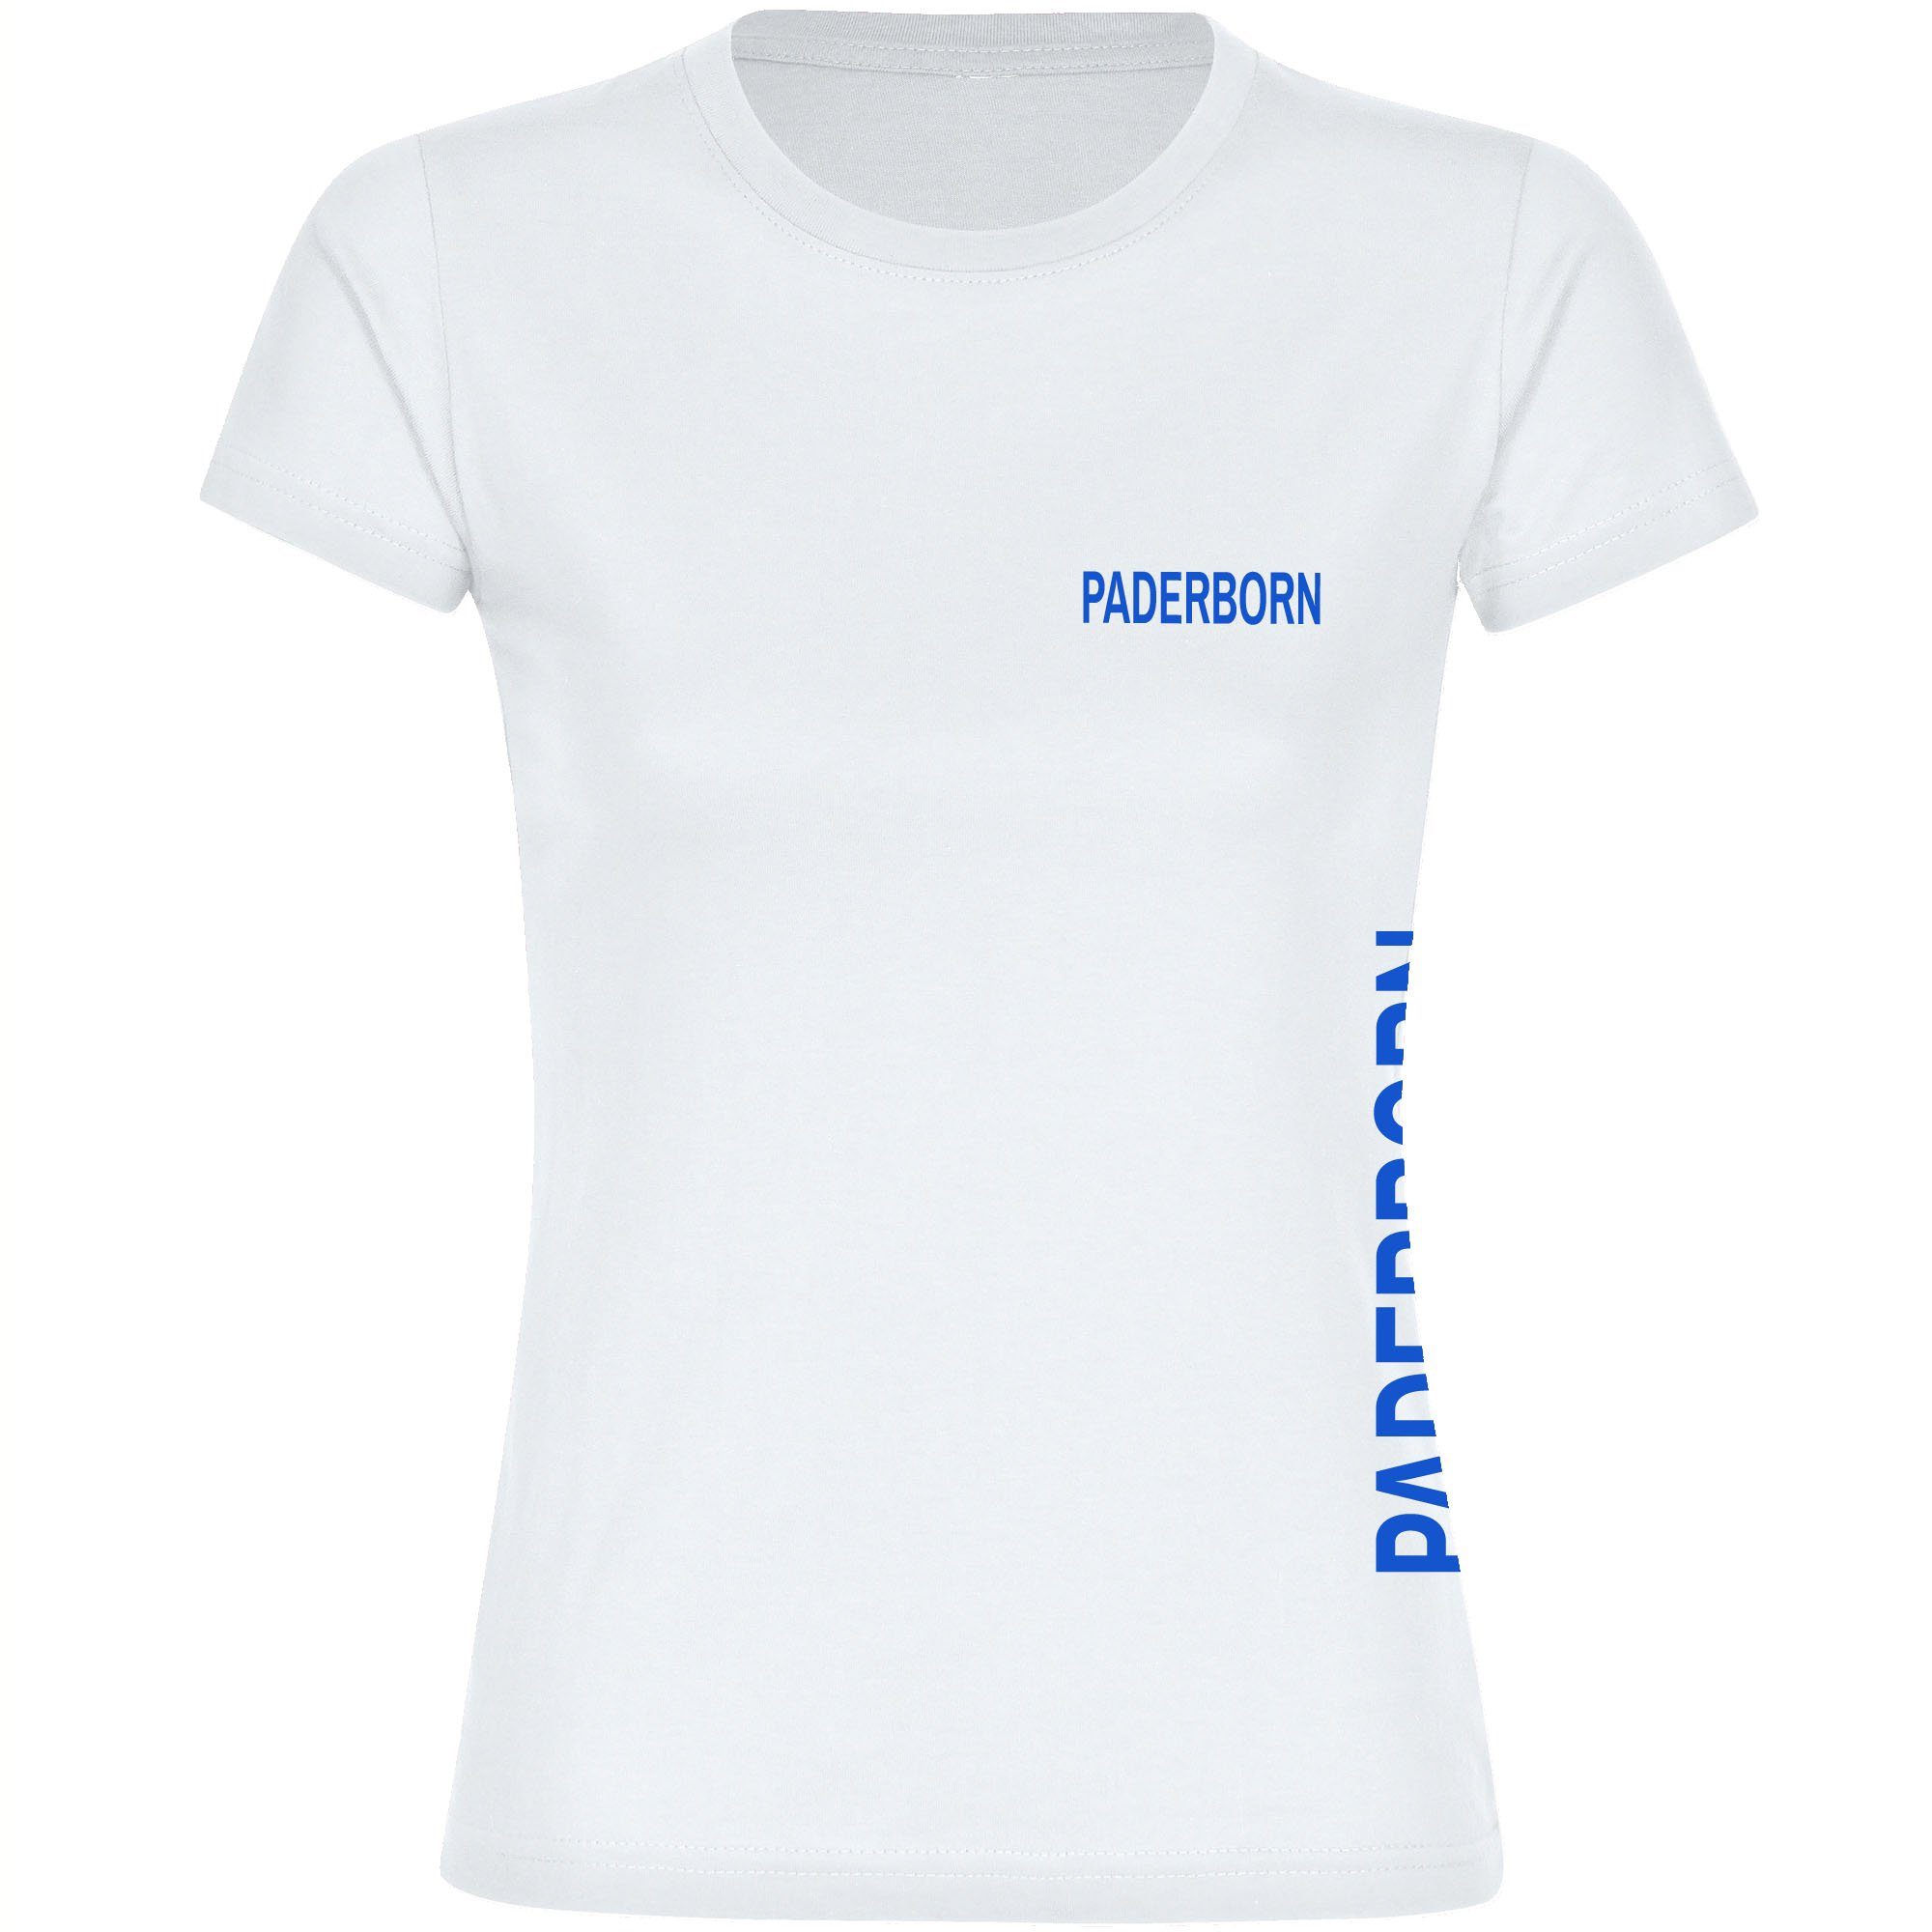 multifanshop T-Shirt Damen Paderborn - Brust & Seite - Frauen